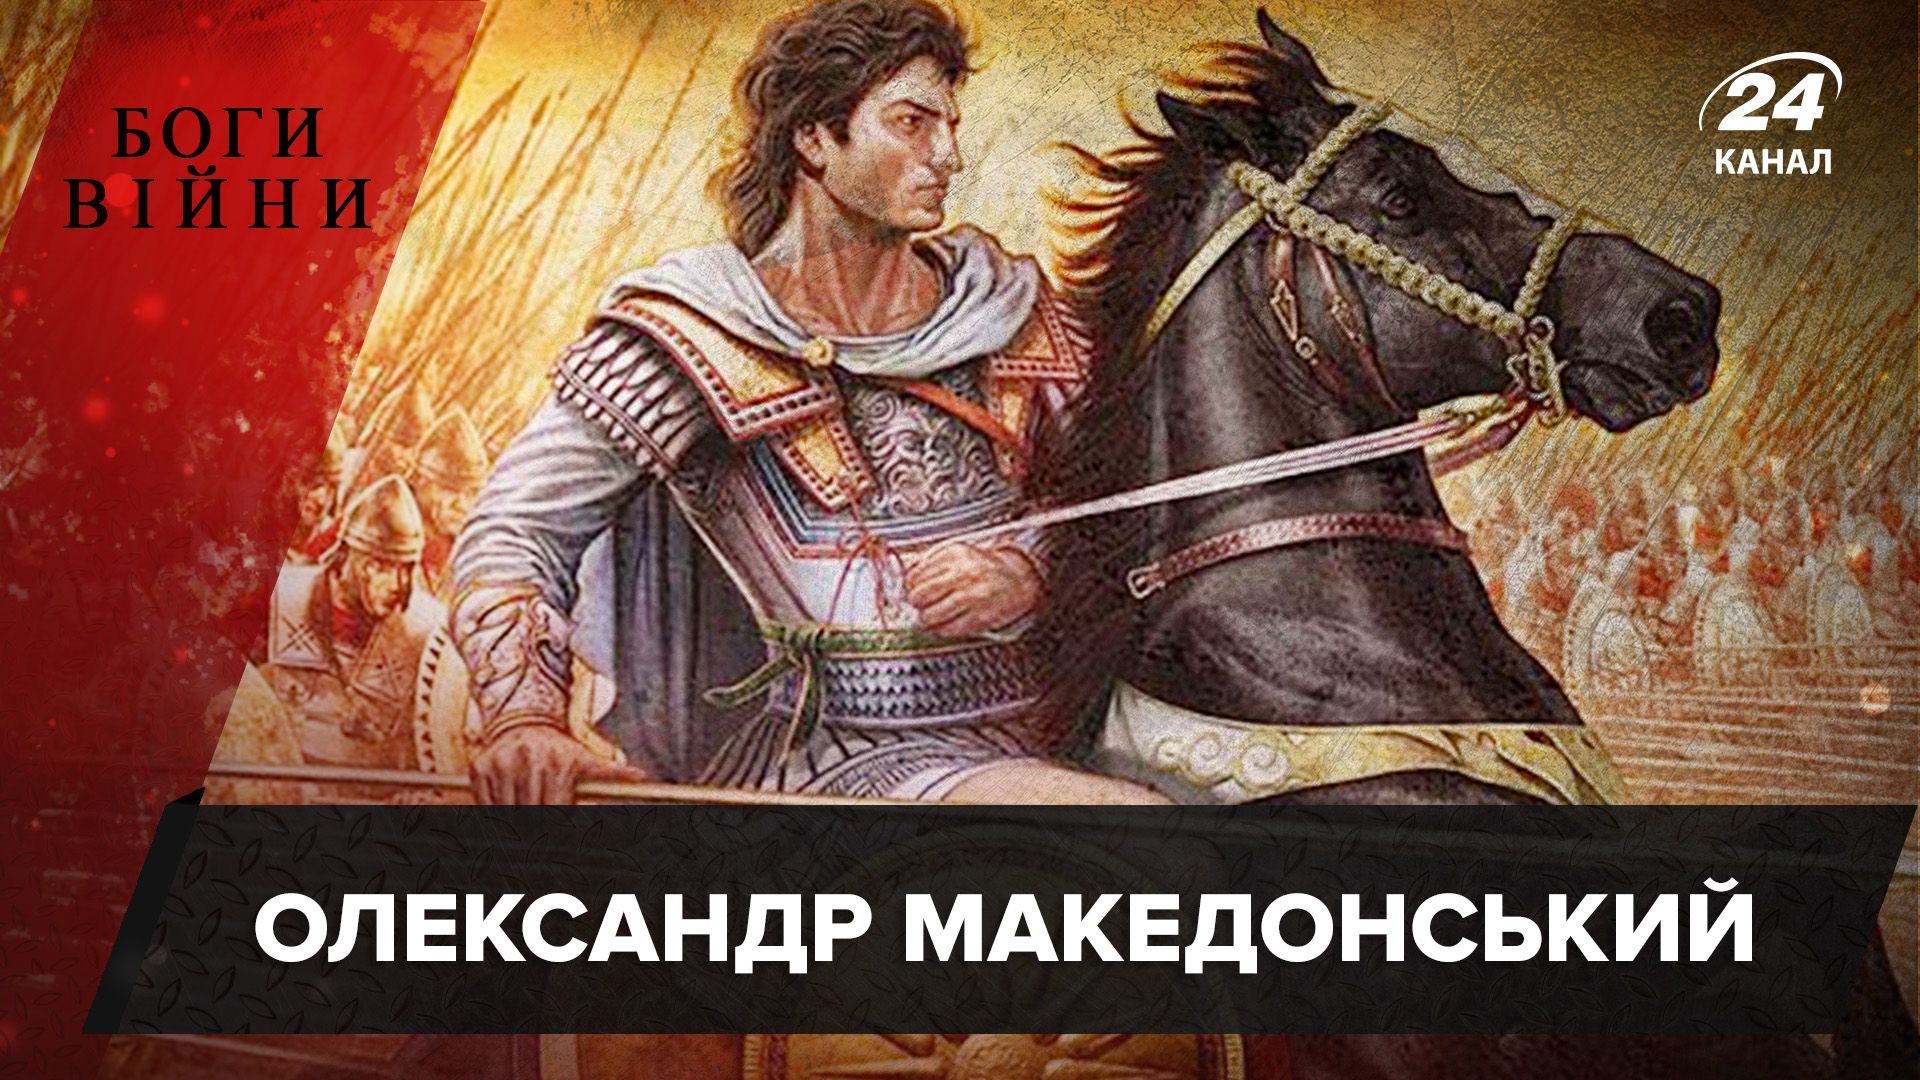 Як Олександр Македонський створив найпотужнішу імперію у світі